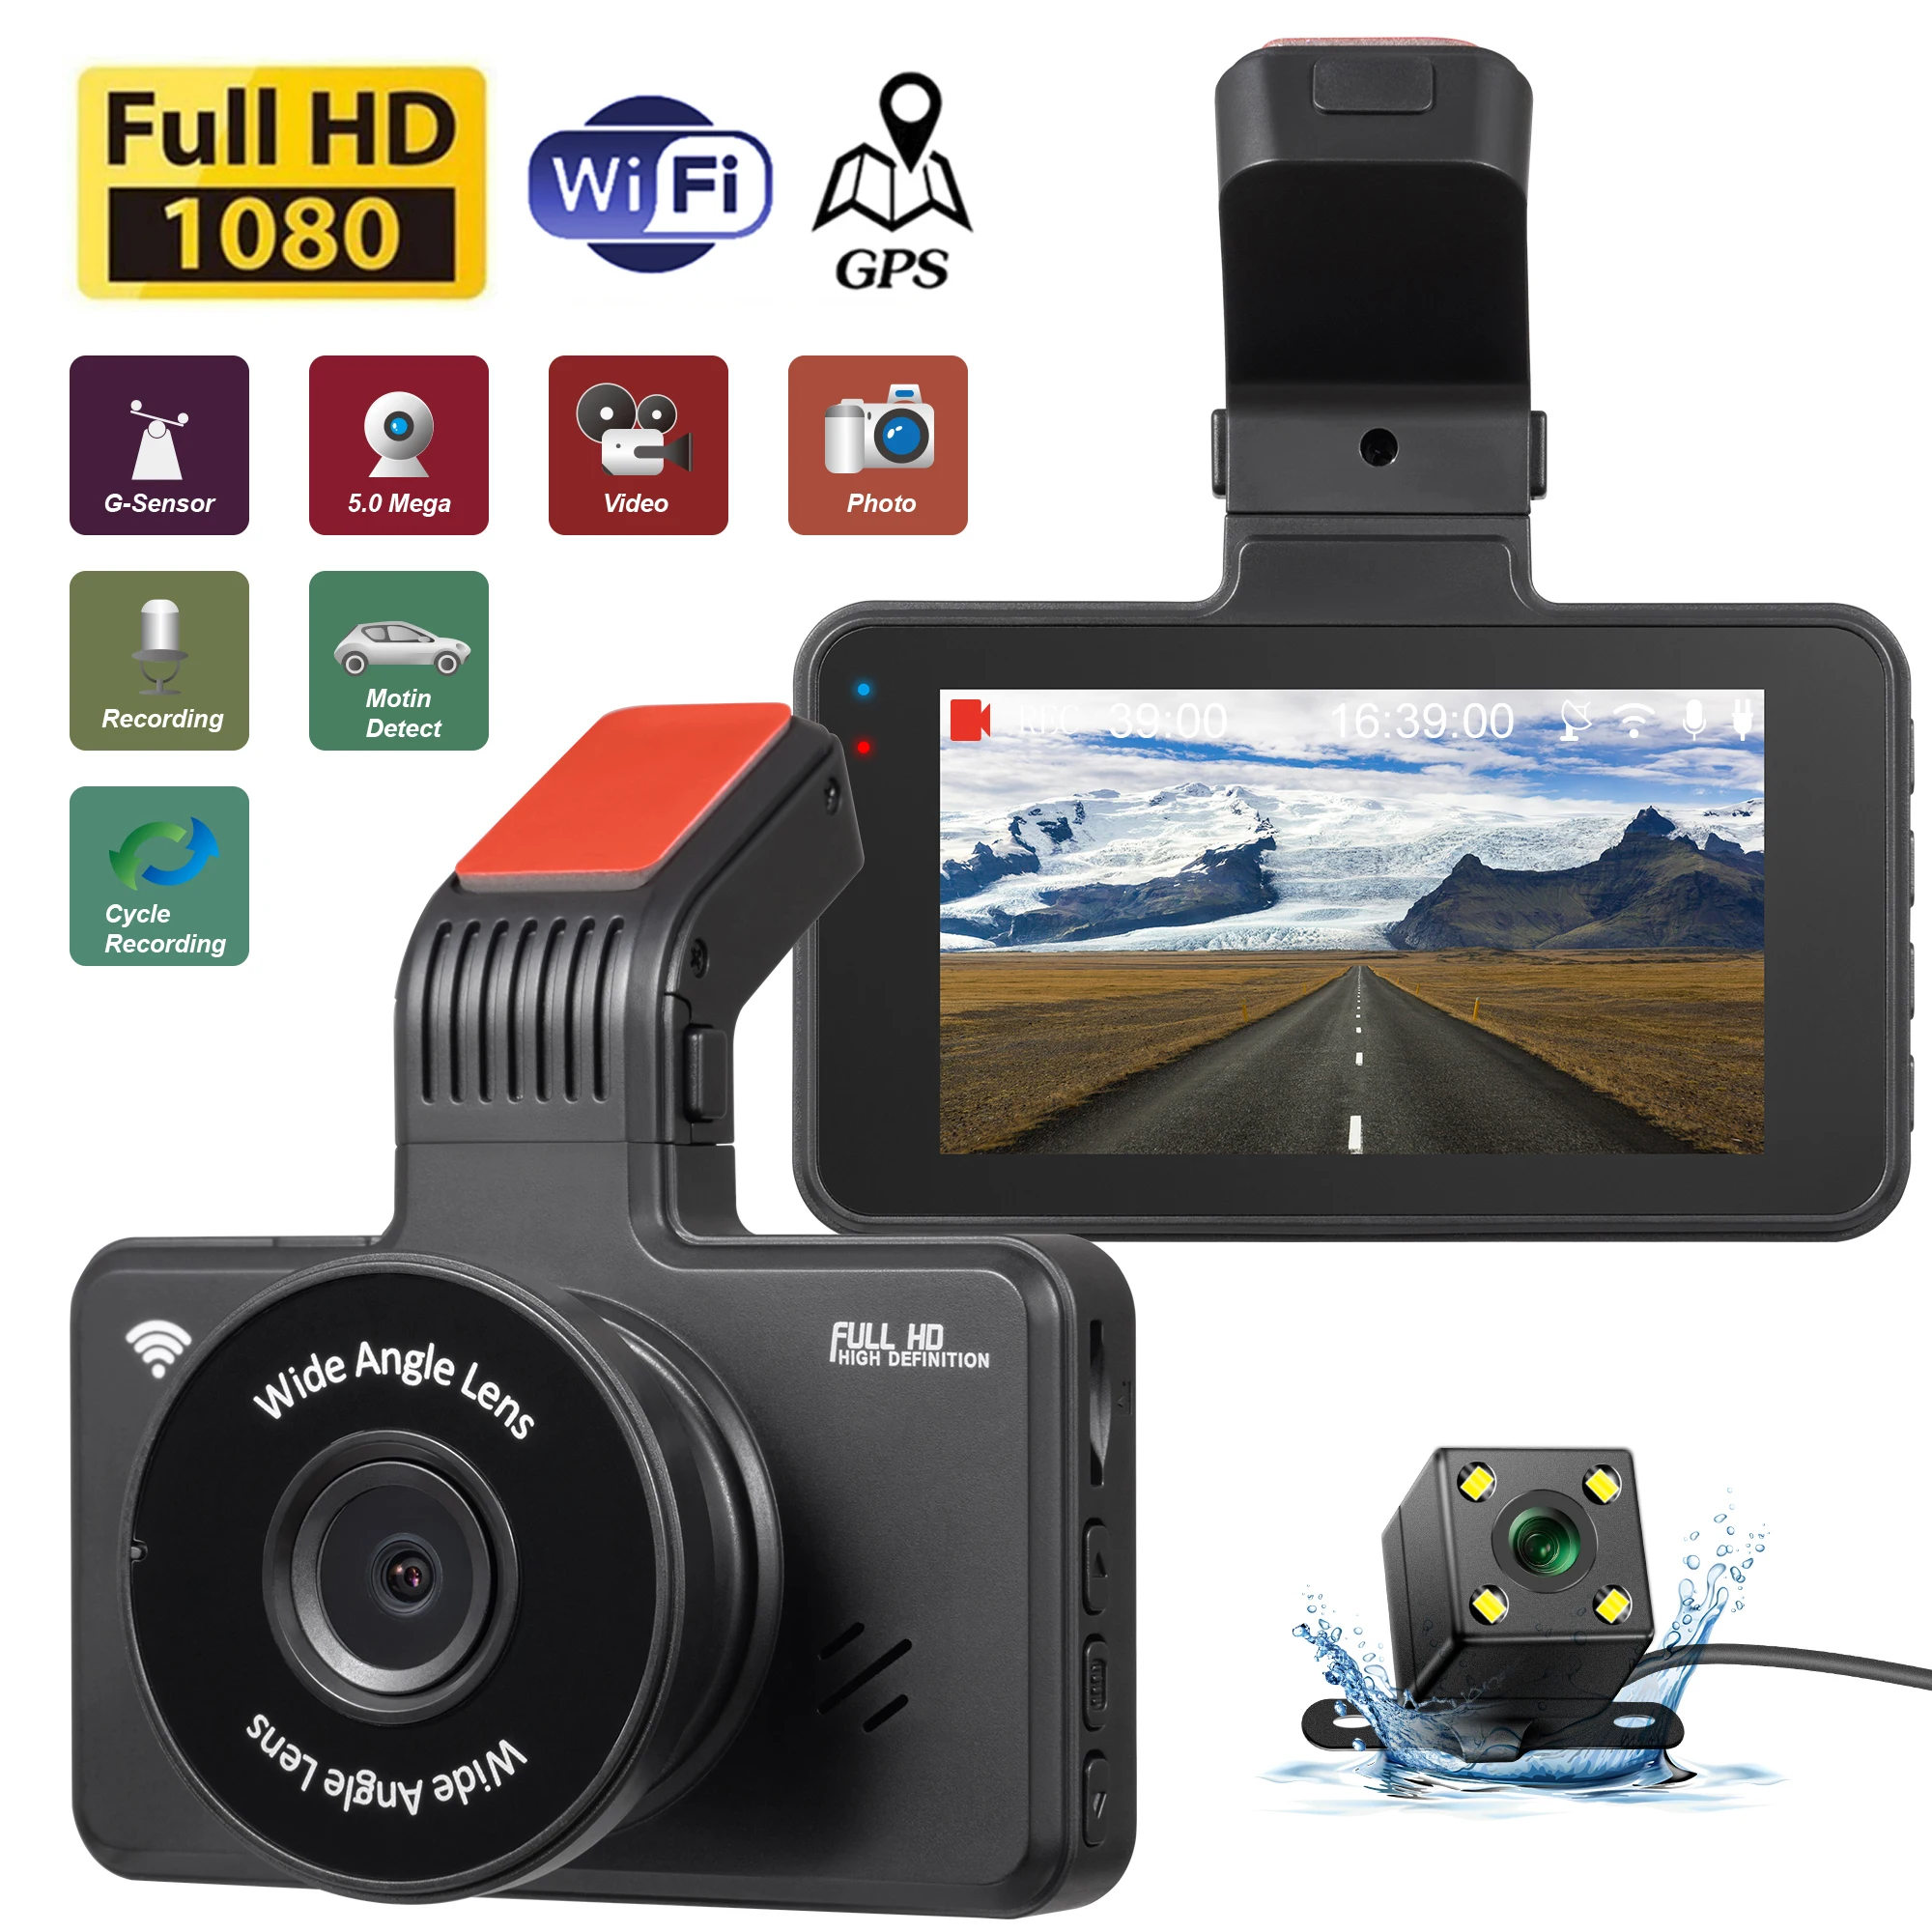 

Автомобильный видеорегистратор Wi-Fi Full HD 1080P, видеорегистратор с камерой для автомобиля, видеорегистратор с ночным видением, Автомобильный видеорегистратор с GPS, автомобильные аксессуары